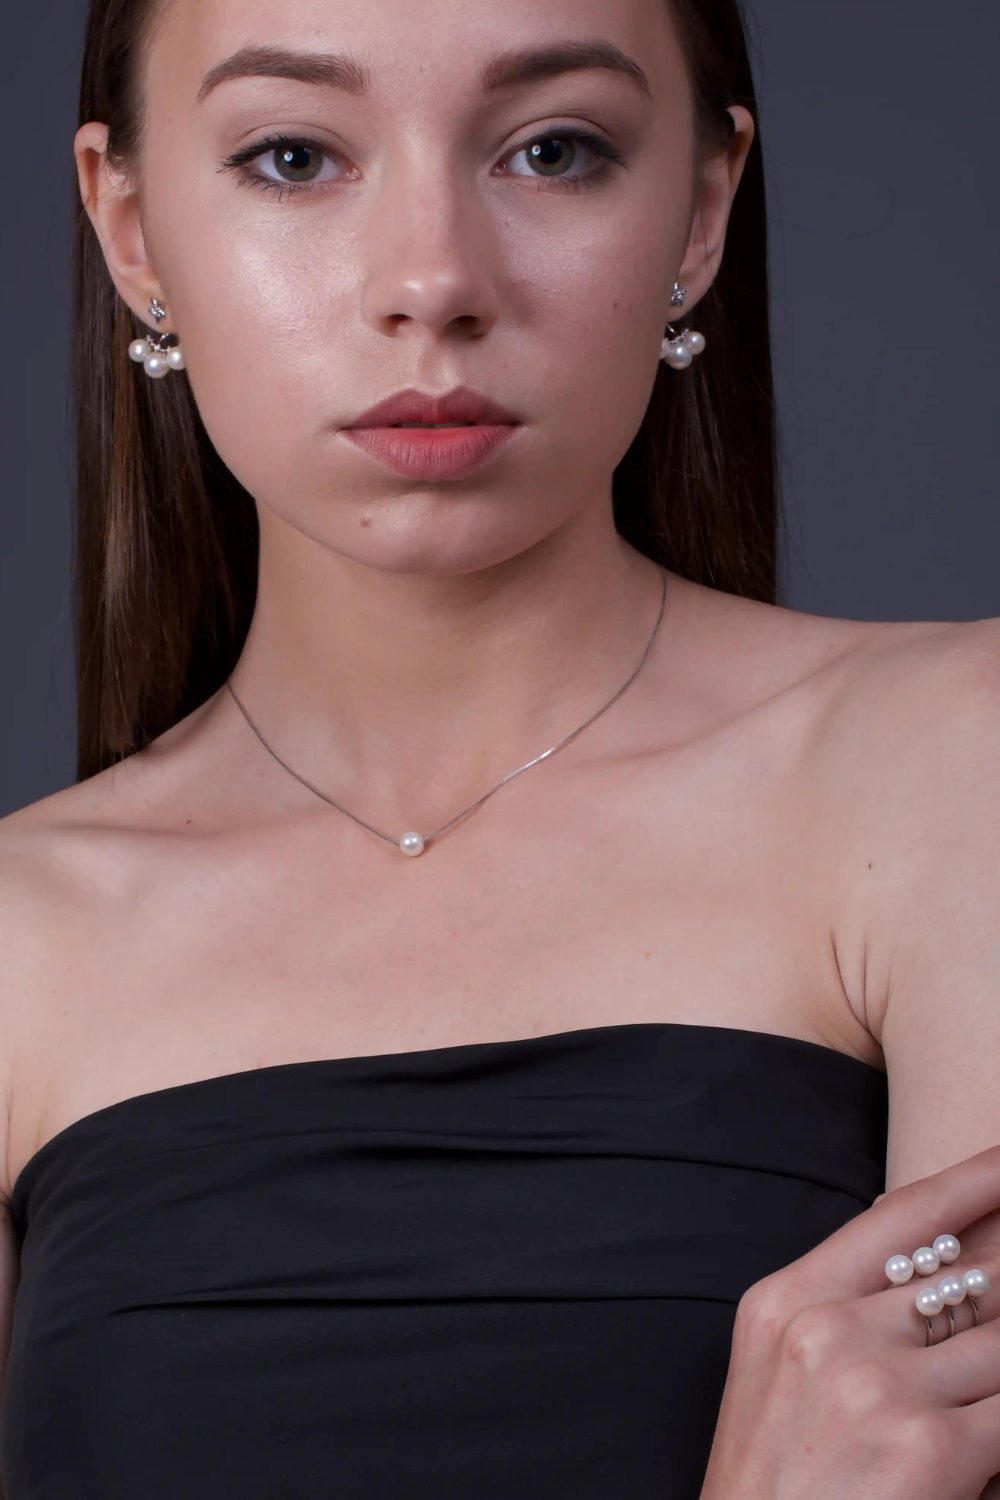 Pearl necklace, (SILVERAMO), KL2G.800S